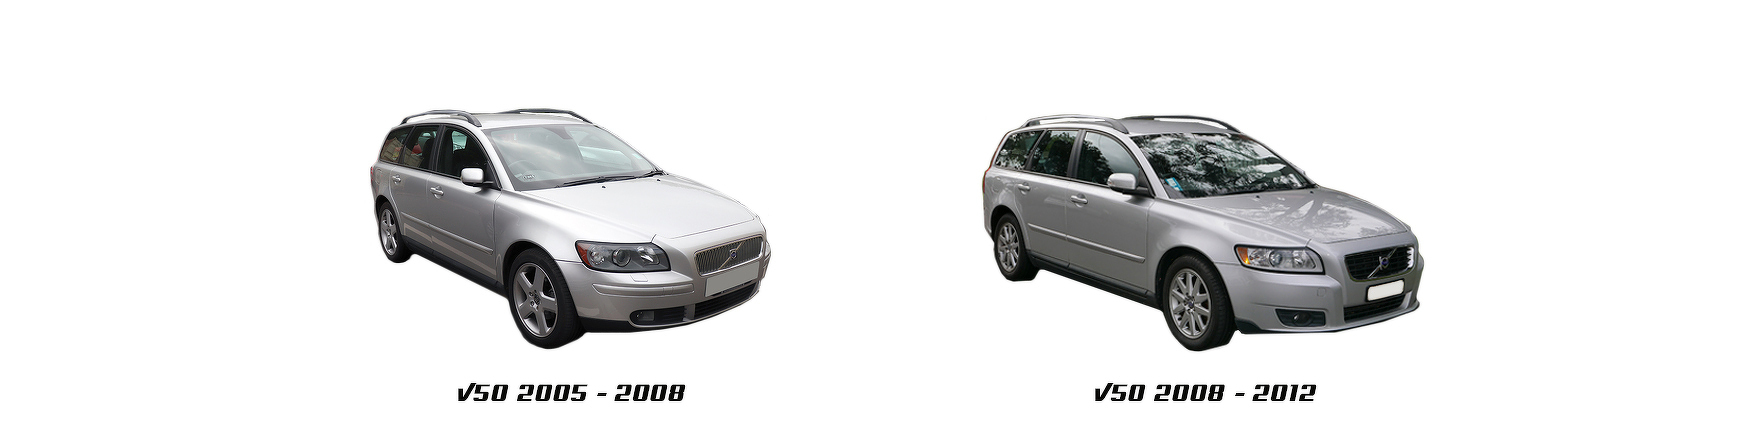 Piezas y Recambios de Volvo V50 de 2005 a 2012 | Veramauto.es